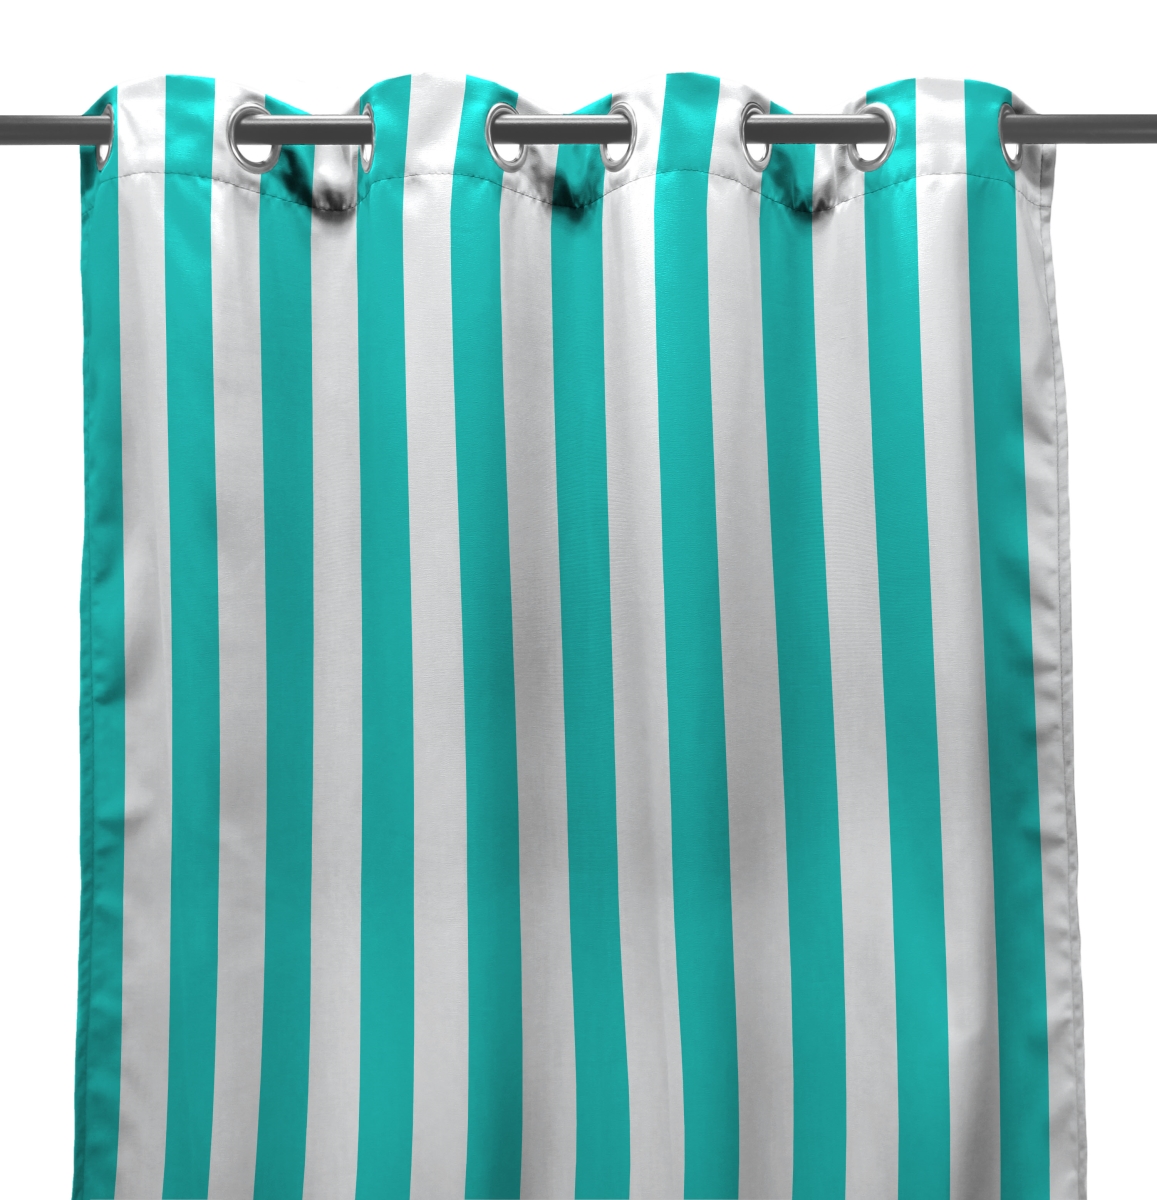 3voc5484-4338q 54 X 84 In. Outdoor Curtain Panel In Ocean Stripe